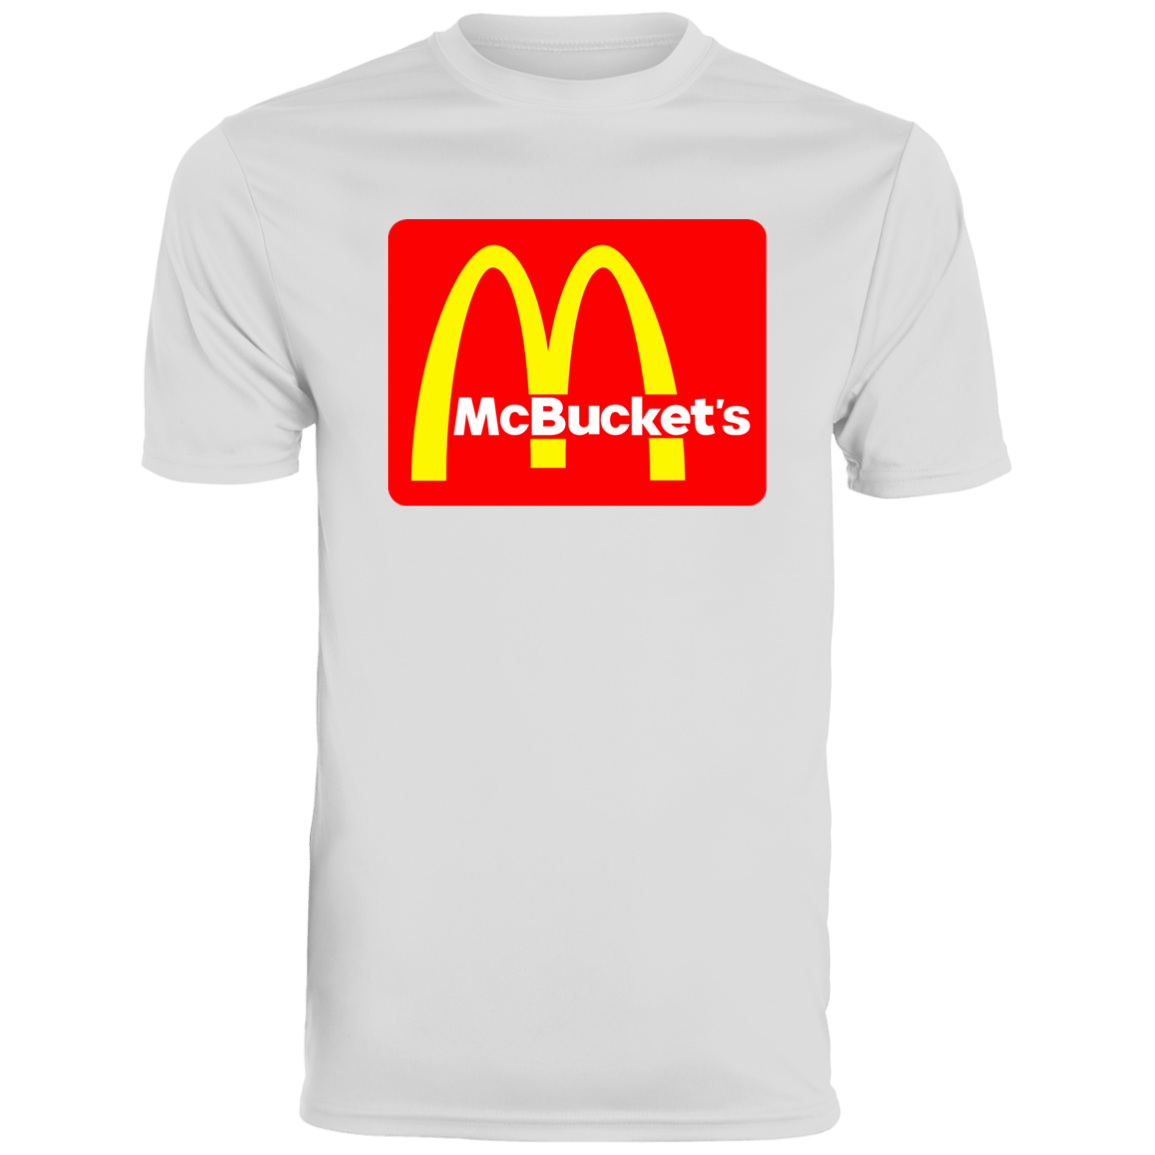 McBucket's Moisture-Wicking Tee